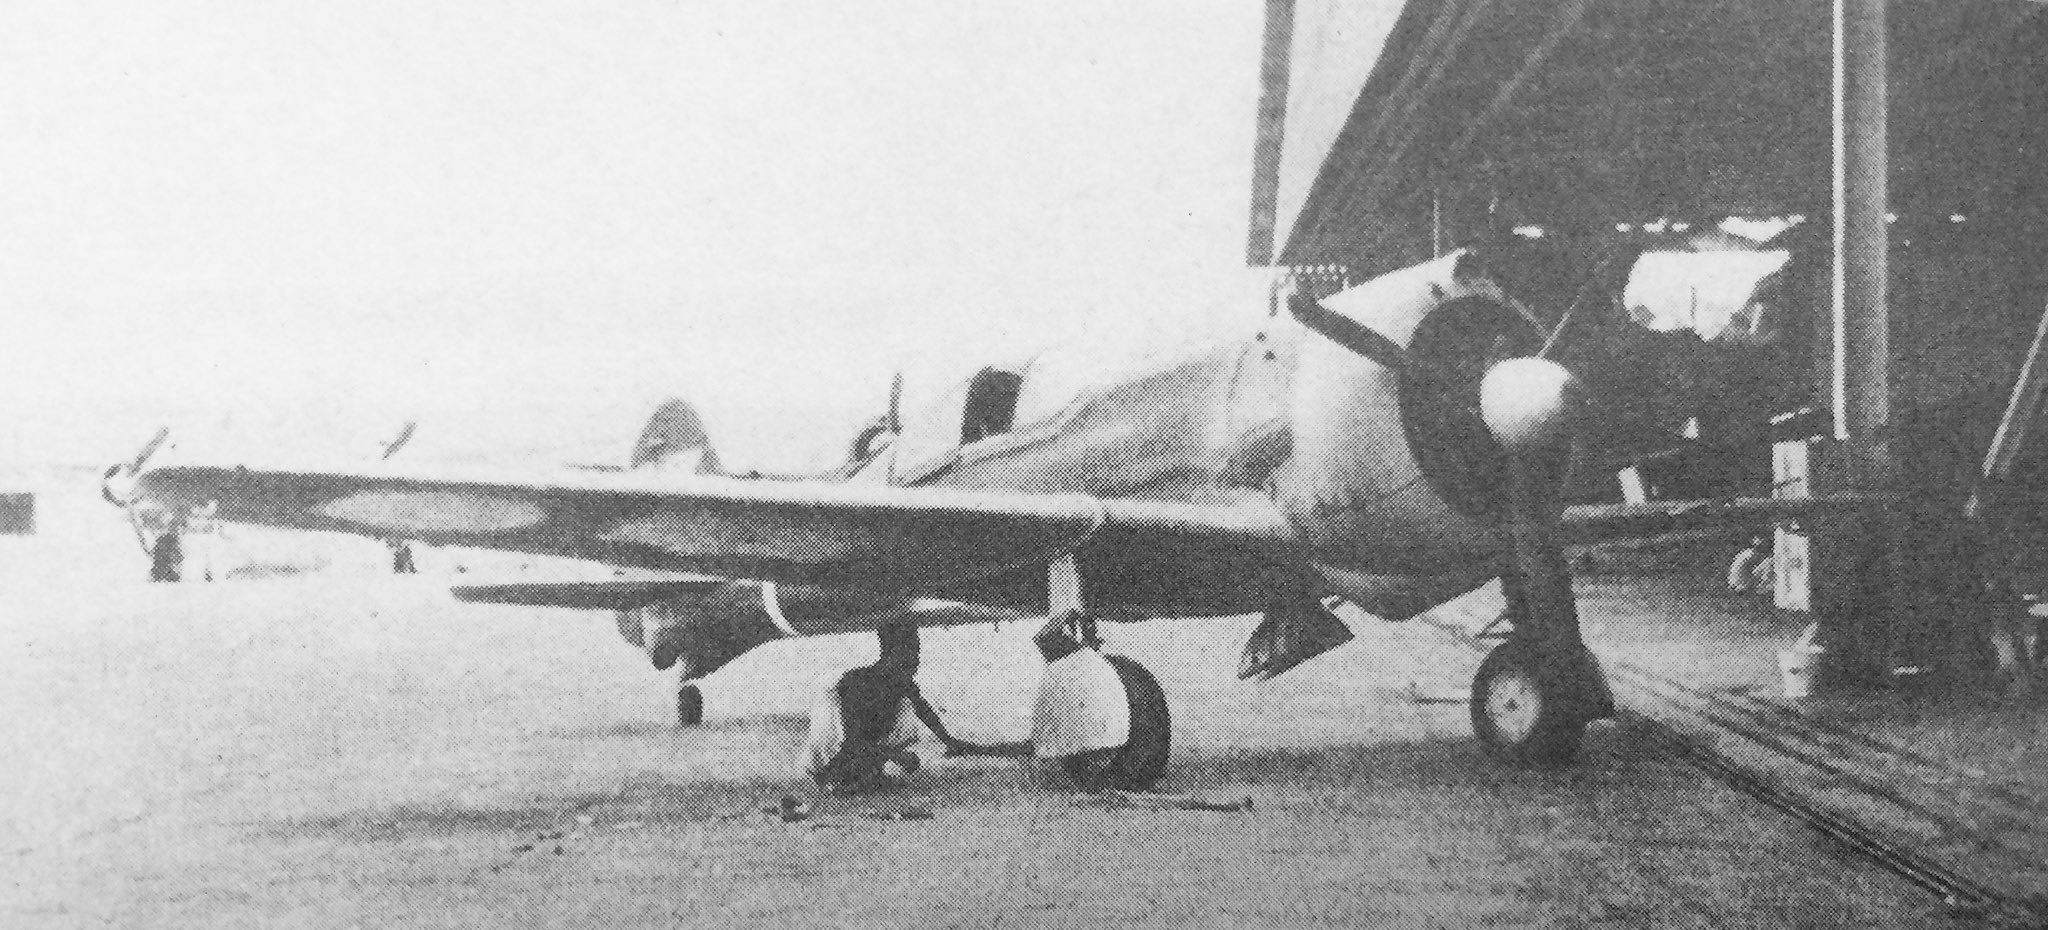 大日本帝國陸軍戦闘機bot Cw 21b アメリカから輸入したオランダ空軍の軽戦闘機 戦闘機 としては性能的に不満はあったが 扱い易さを買われ 鹵獲した日本陸軍でも実用機として使われたものもあり 写真の機体もその内の一機である T Co Dc3gkmkf